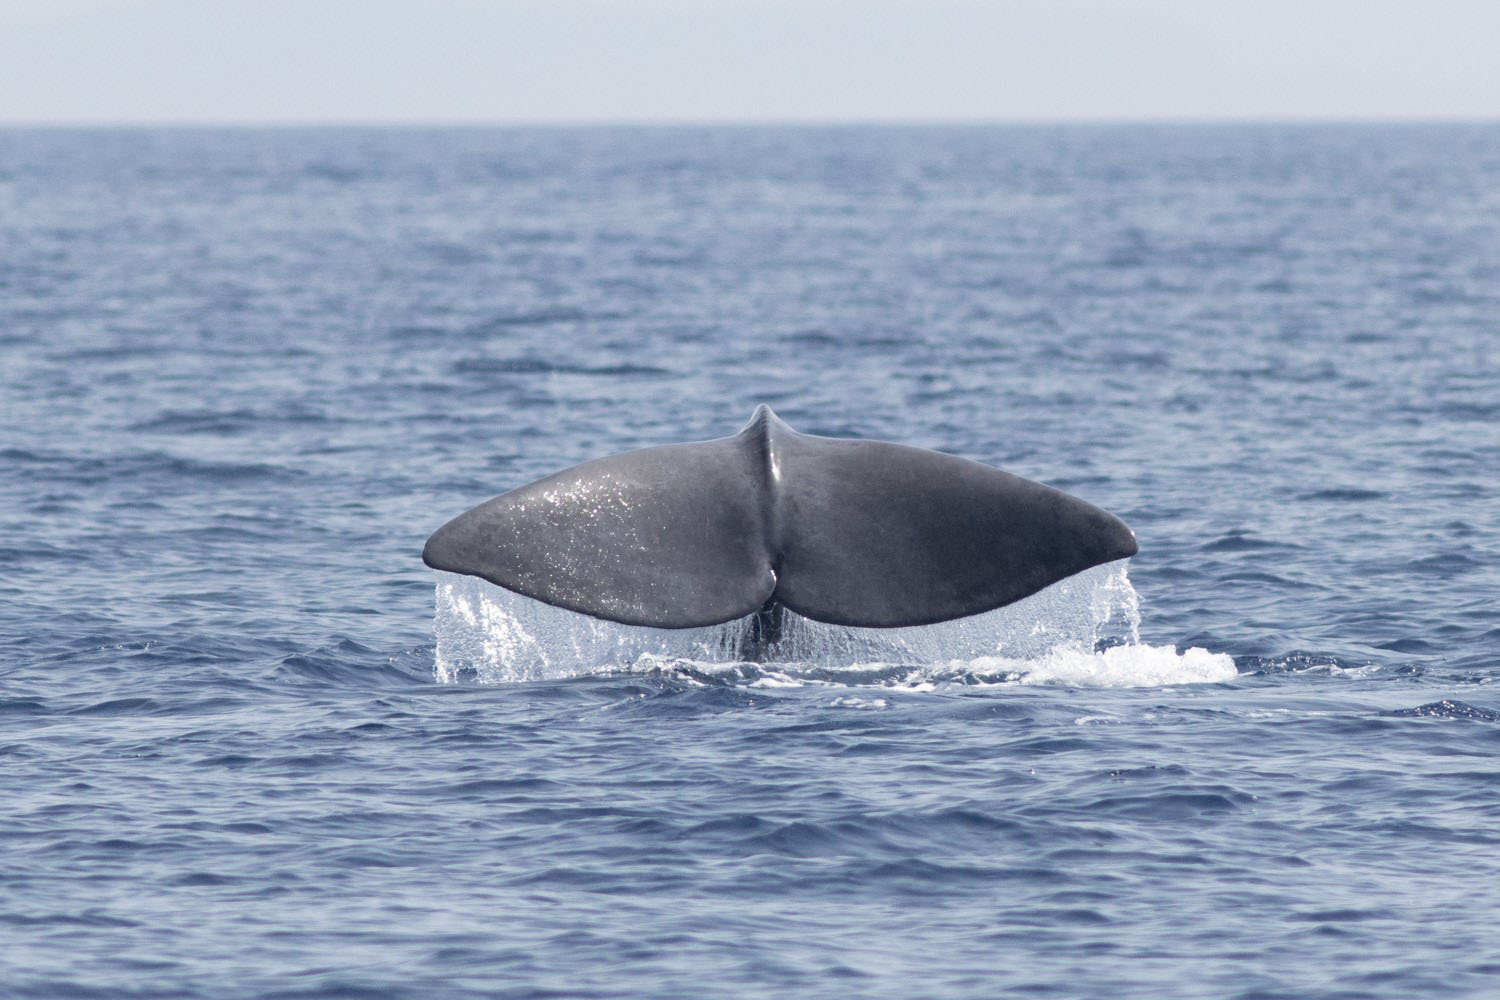 voyage scientifique - cetaces de mediterranee vers la corse a la voile 7